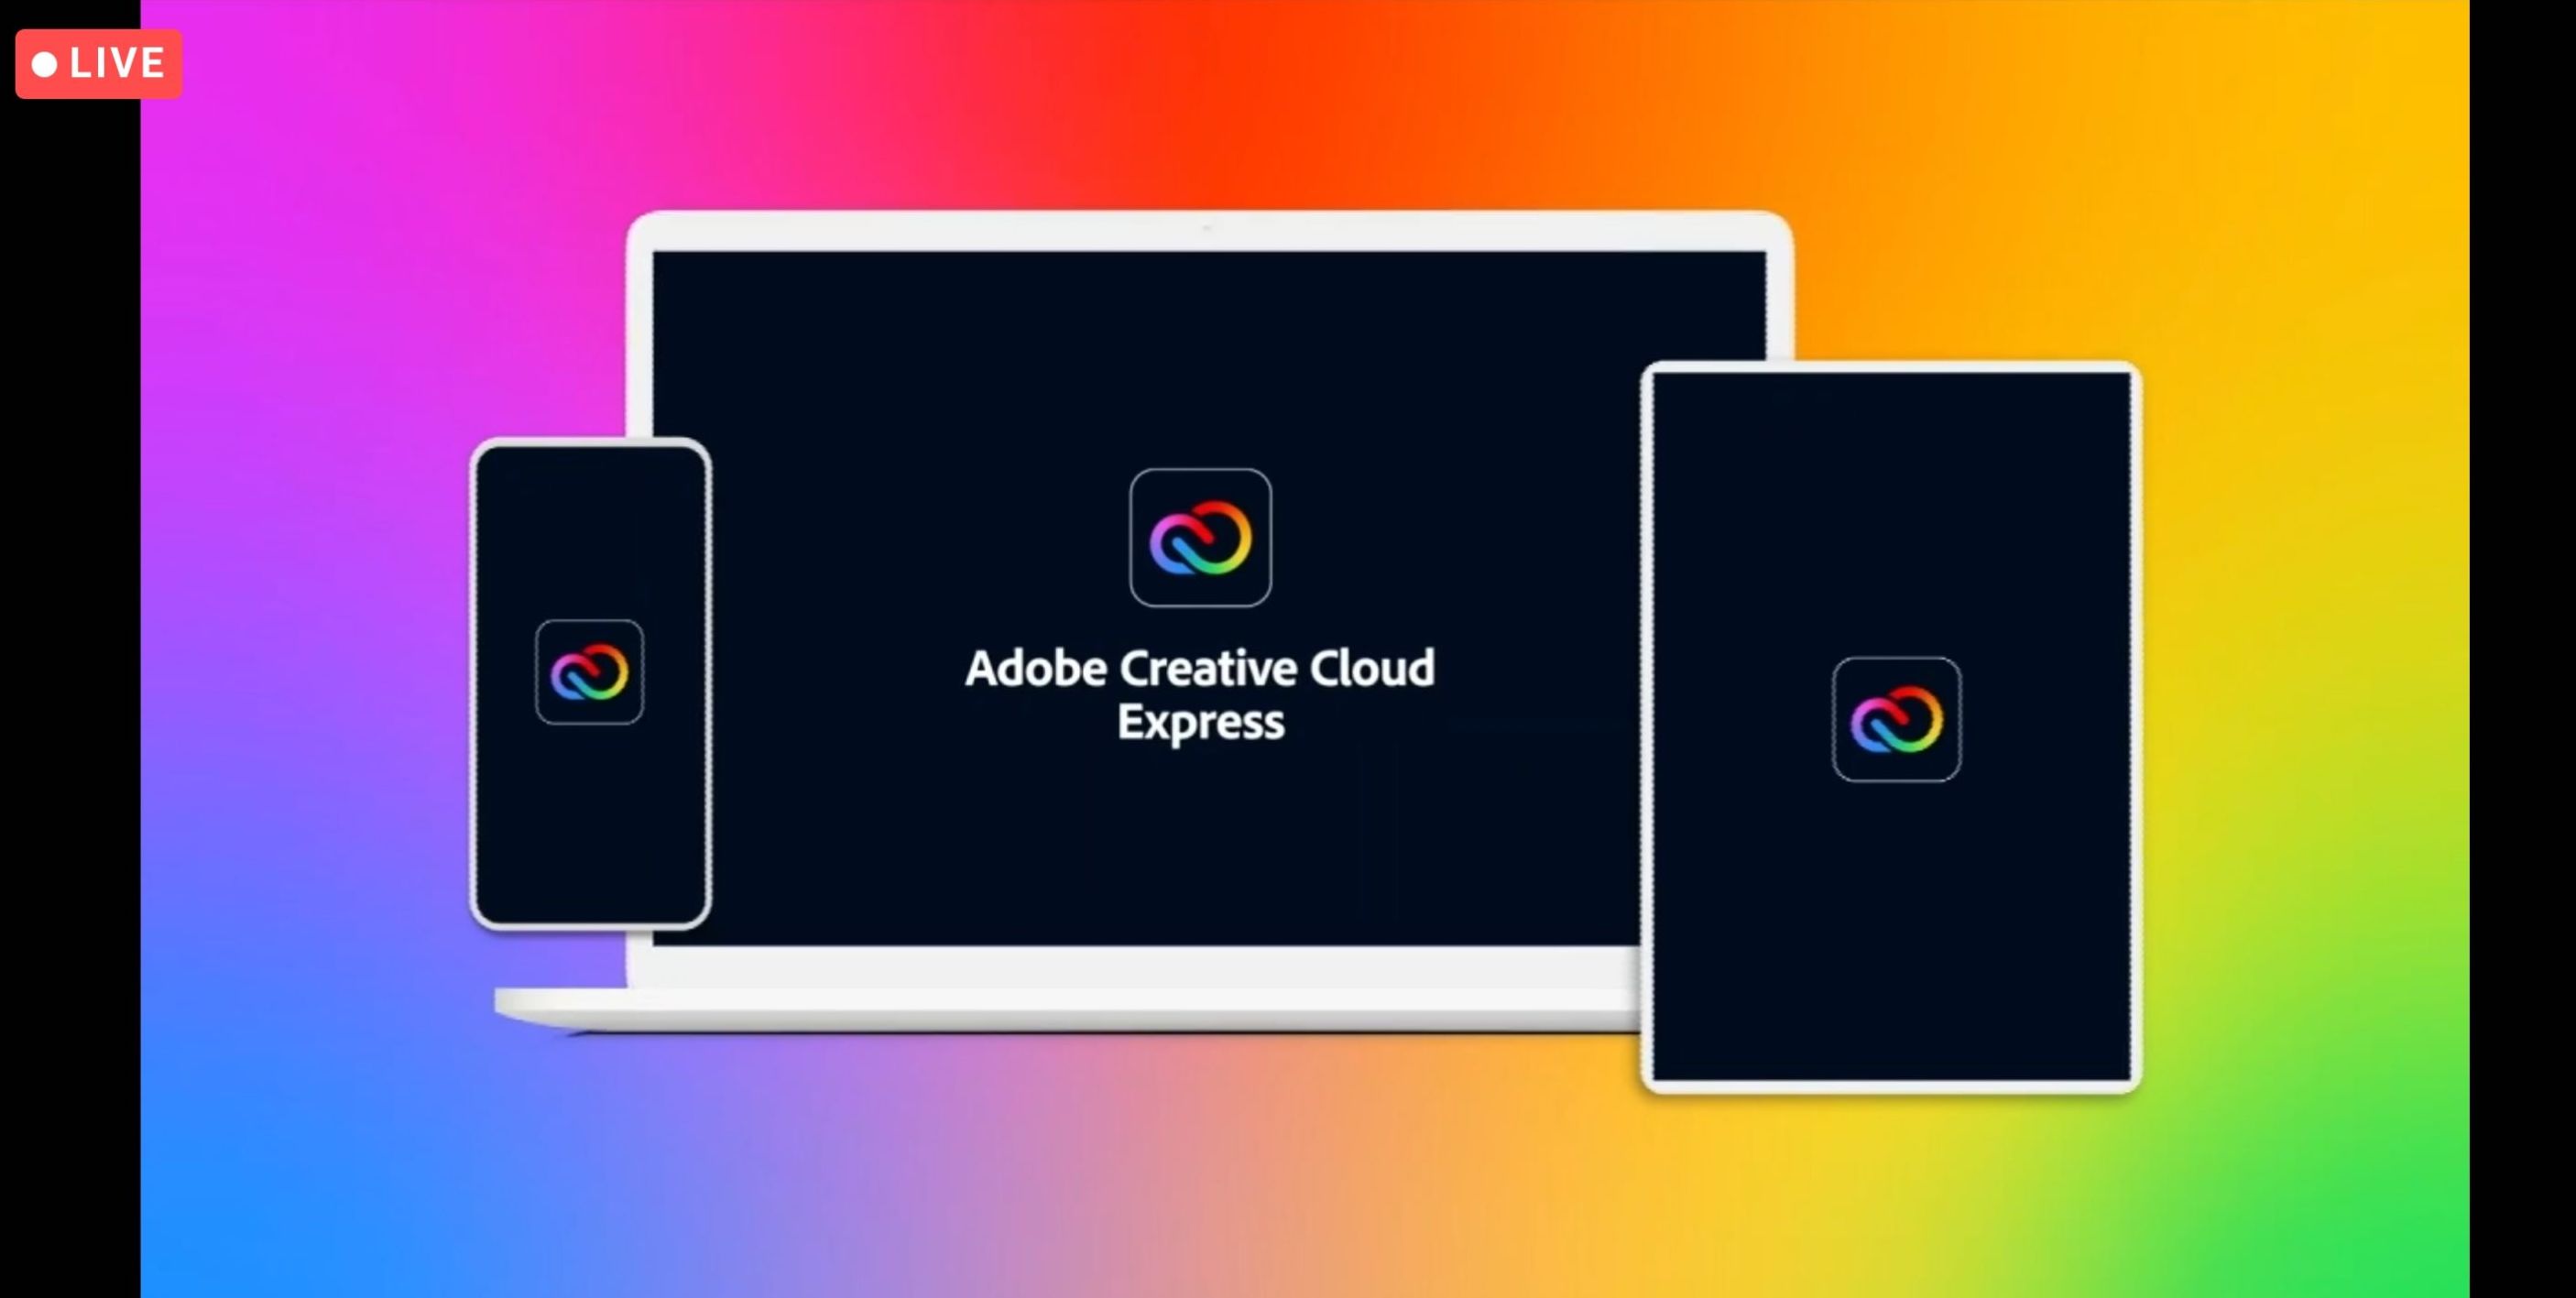 อะโดบีเปิดตัว “Creative Cloud Express” ใช้งานได้ทั้งบนเว็บและมือถือ ปรับราคาใหม่ $9.99 ต่อเดือน สร้างและแชร์คอนเทนต์ที่โดดเด่น เตรียมสู่ยุค Metaverse 